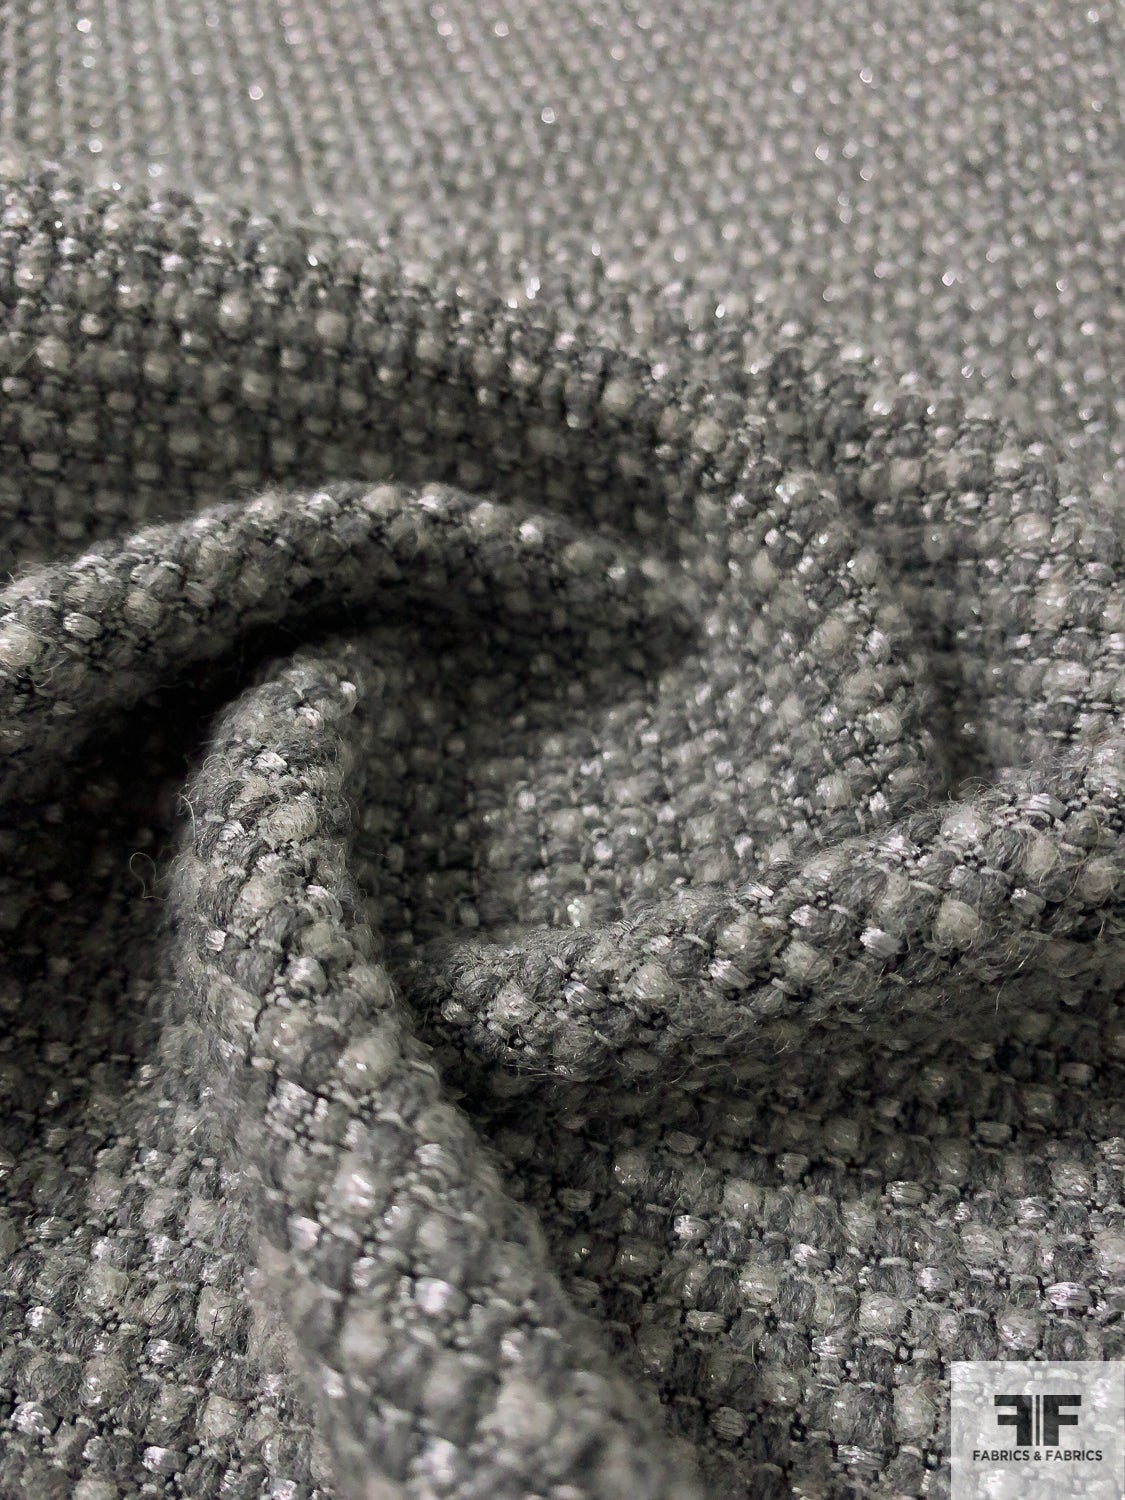 Italian Fine Basketweave with Lurex Fibers Ladies Tweed Suiting - Grey / Silver